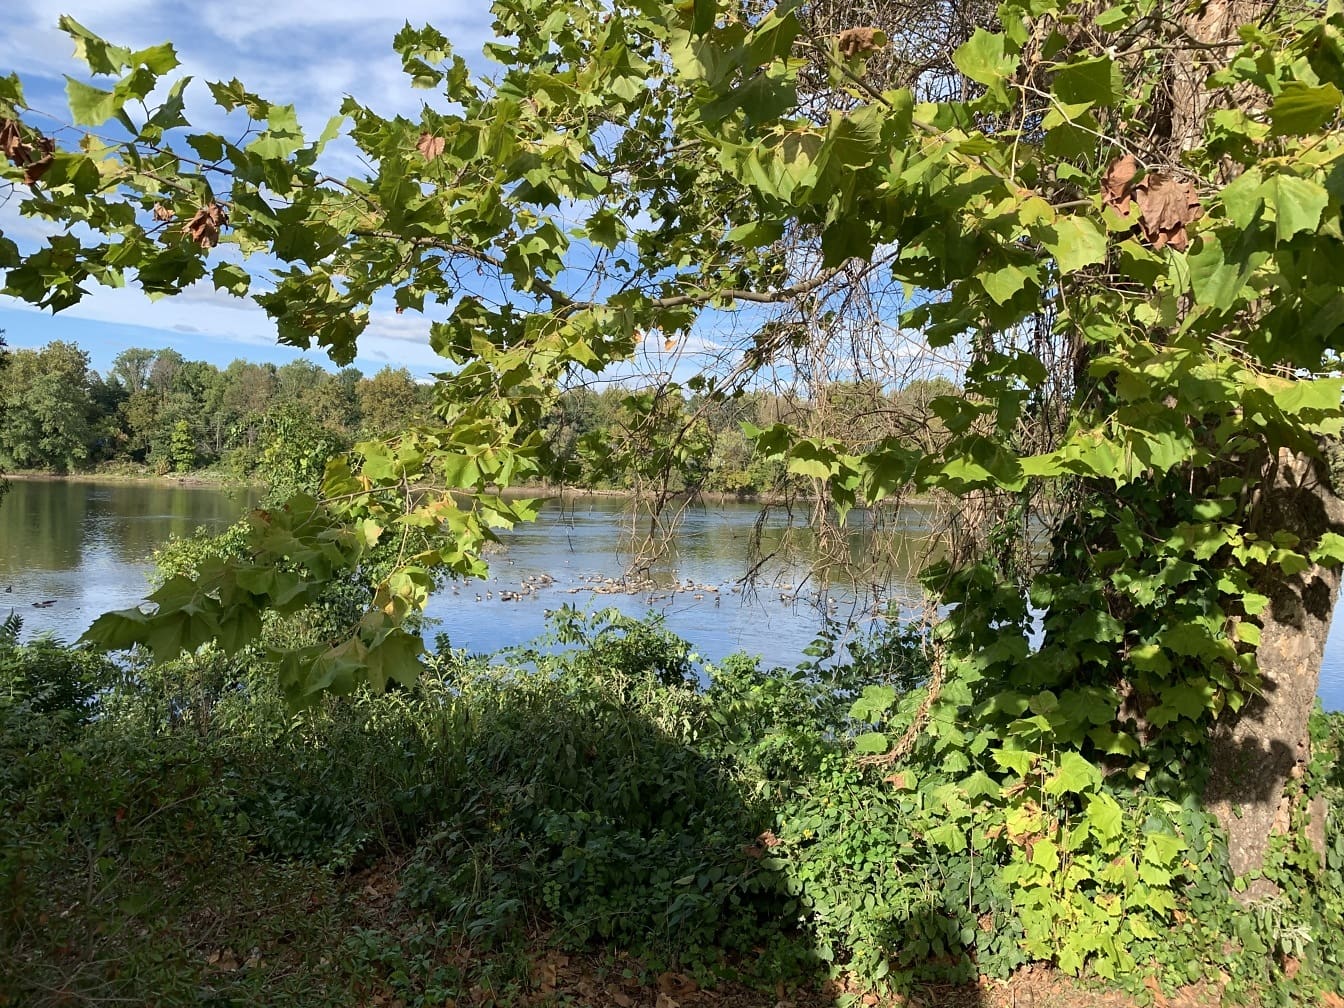 A Delaware folyó látképe a pennsylvaniai Langhorne folyópartjáról, az előtérben lévő fával, amely keretezi a felvételt